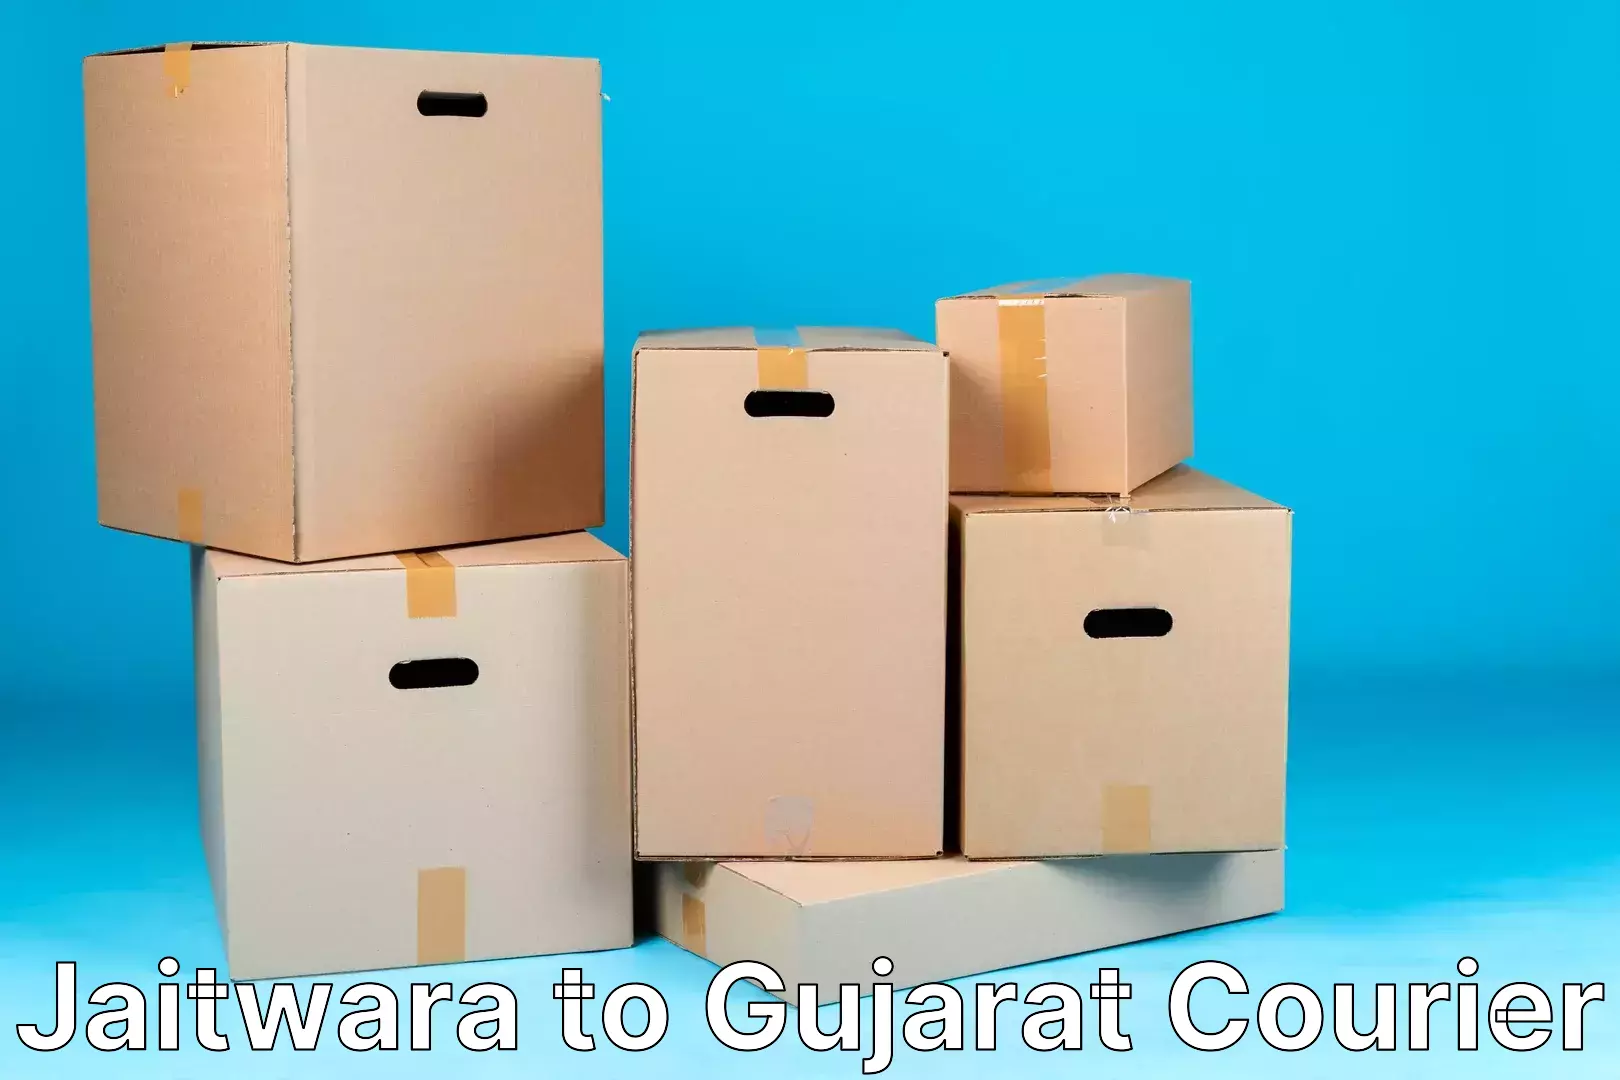 Seamless shipping service Jaitwara to Gujarat